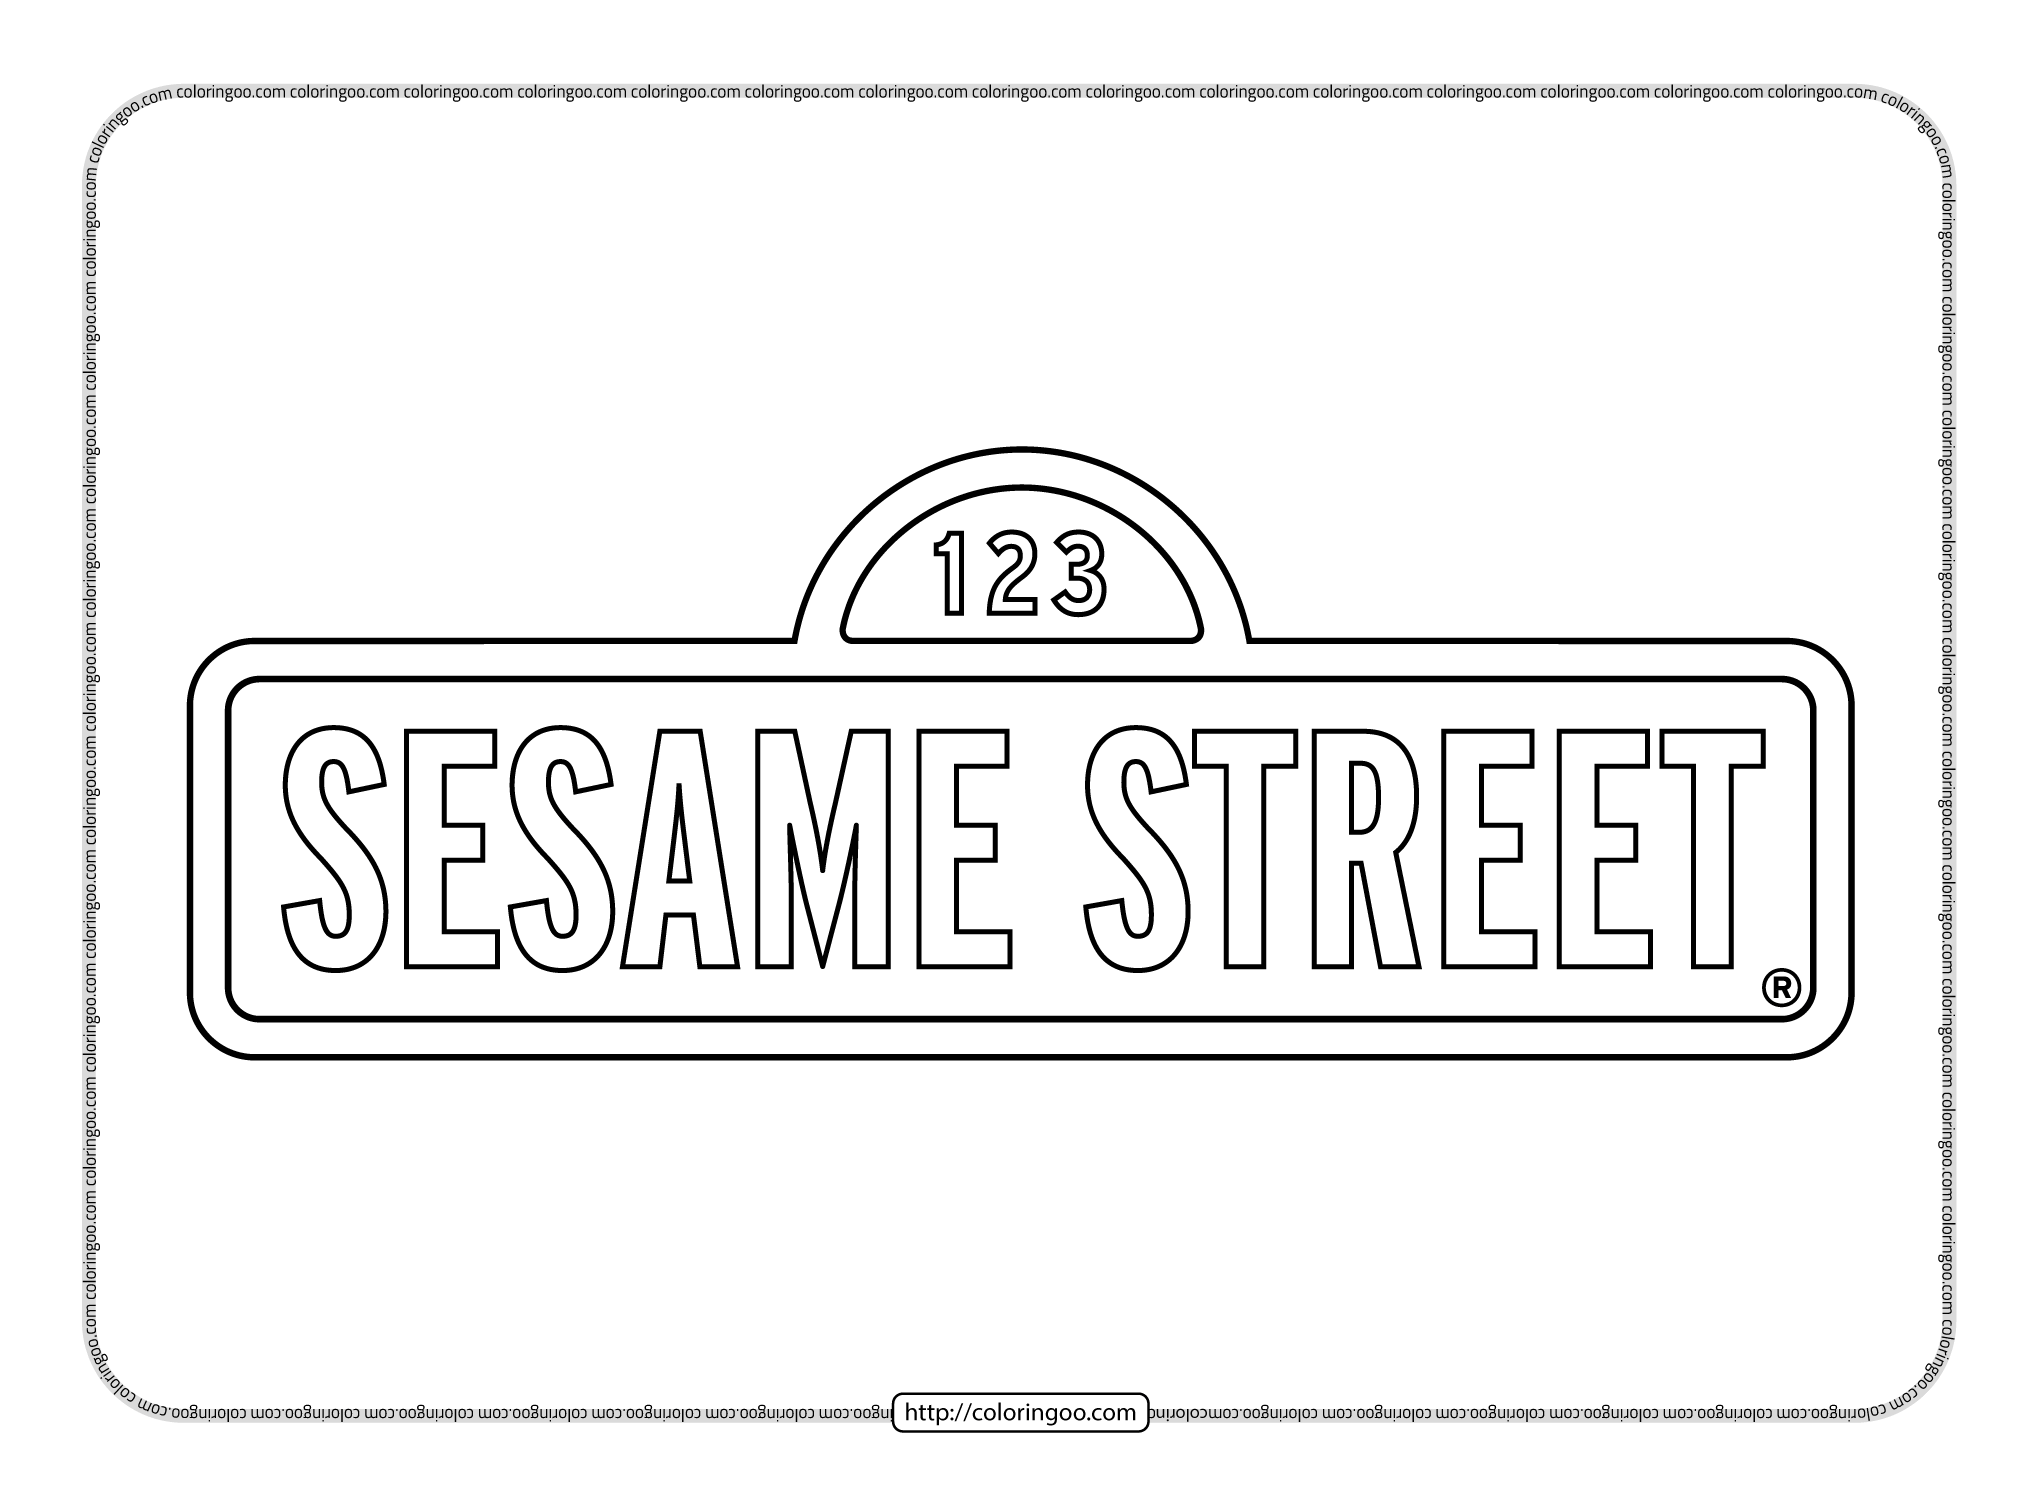 sesame street pdf outline signboard logo